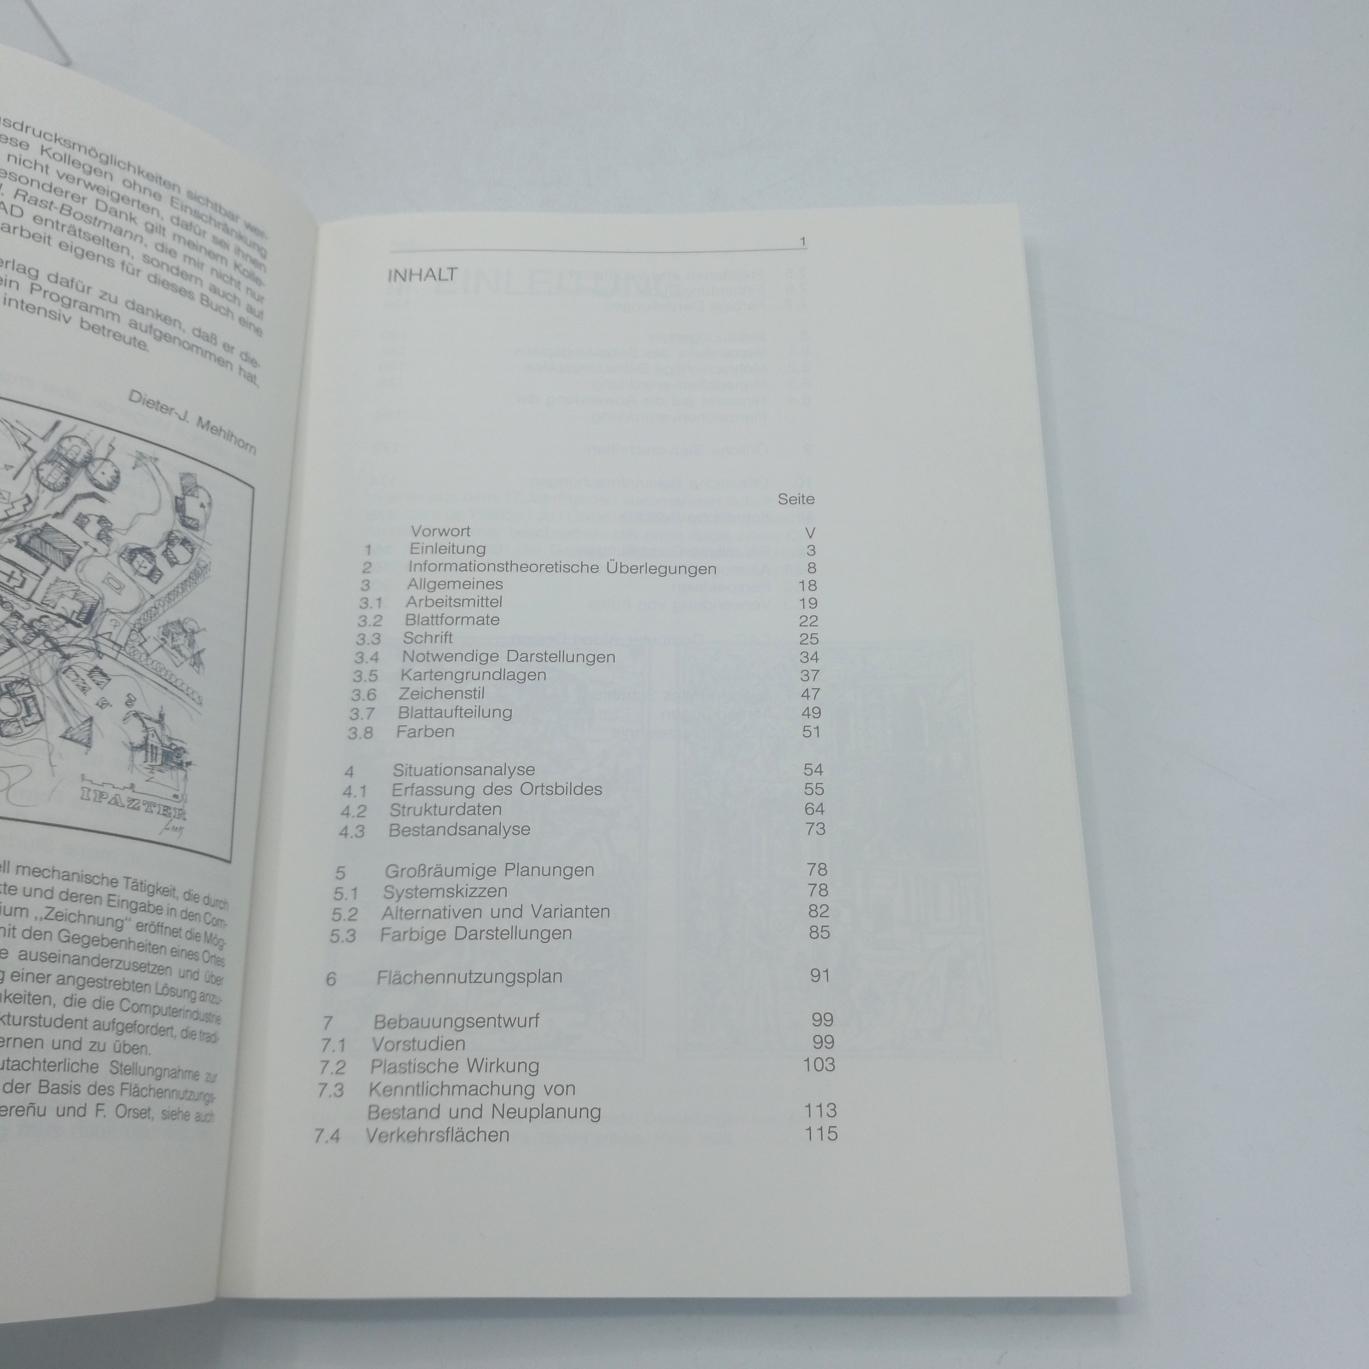 Mehlhorn, Dieter-J. (Verfasser): Zeichnen für Stadtplaner Grafische Gestaltung städtebaulicher Karten, Pläne und Berichte / Dieter-J. Mehlhorn